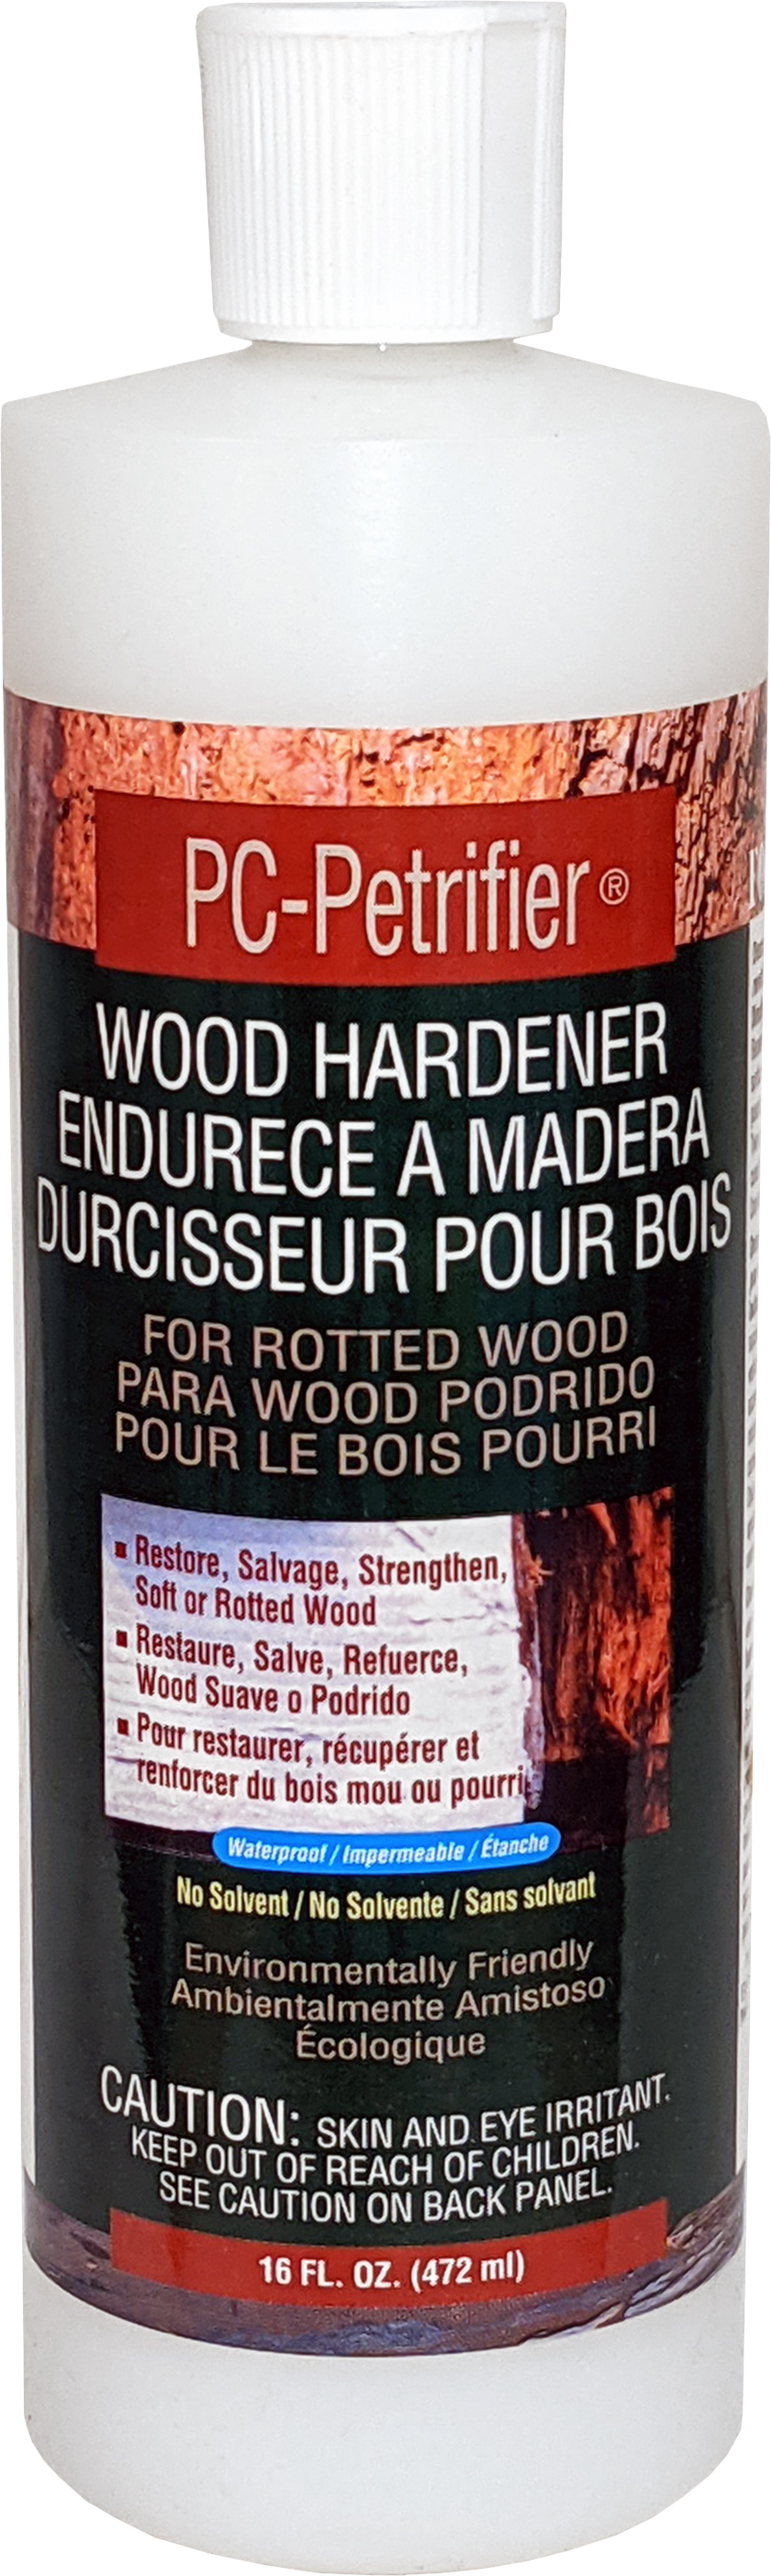 PC-Petrifier - Durcisseur pour bois - Protective Coatings - Ardec